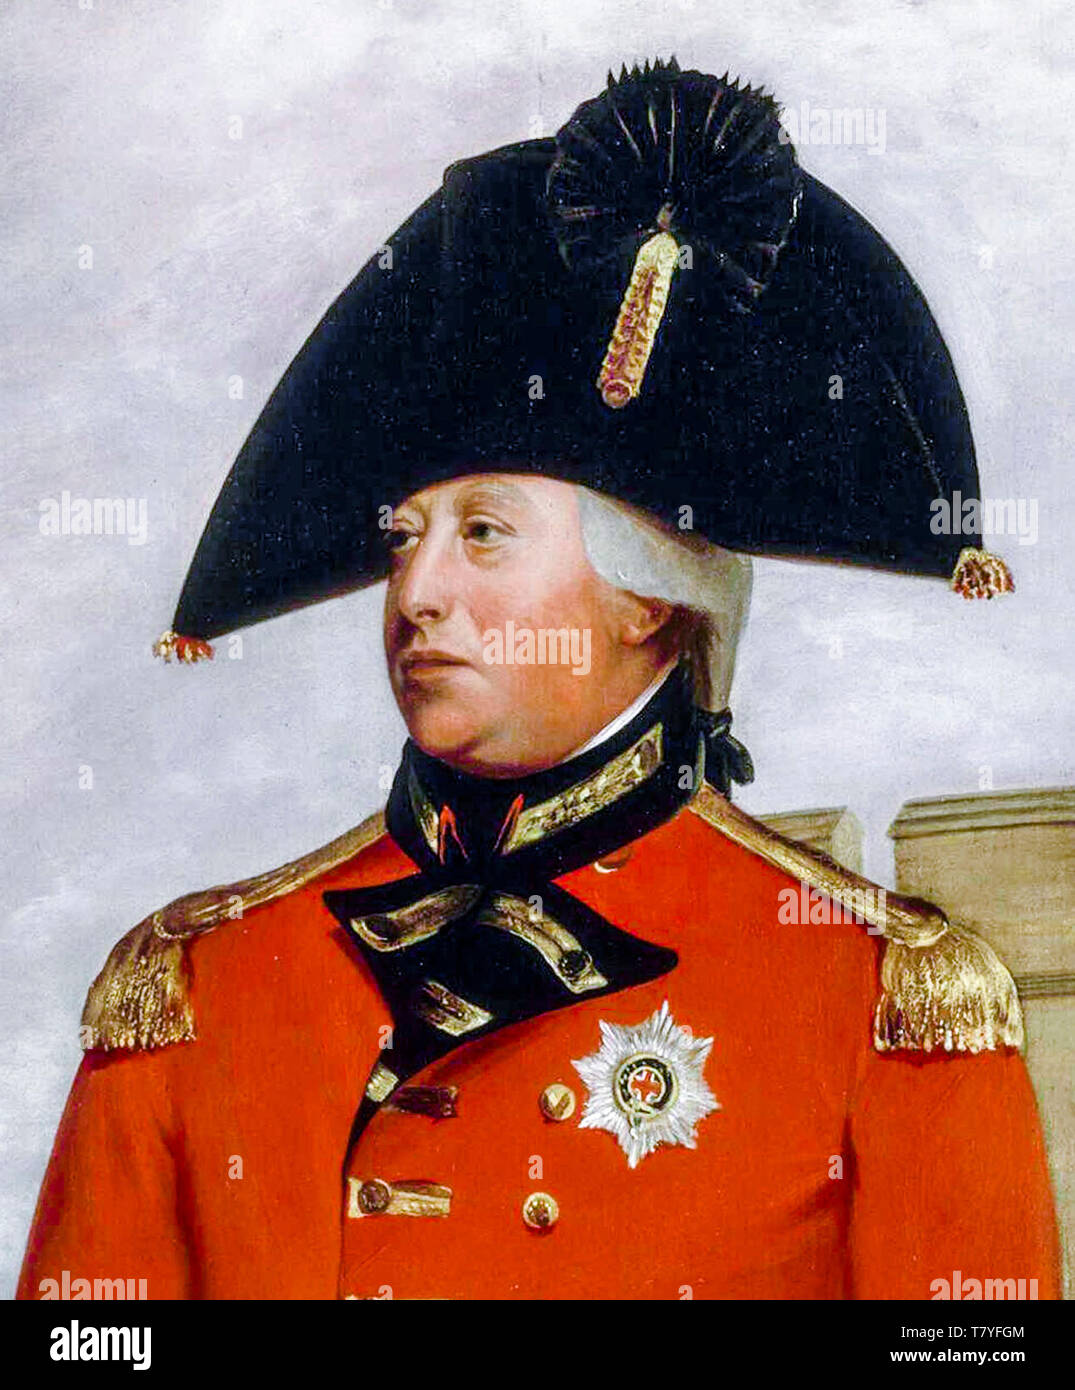 William Beechey, Giorgio III (1738-1820) in uniforme militare, ritratto dipinto intorno al 1800 Foto Stock